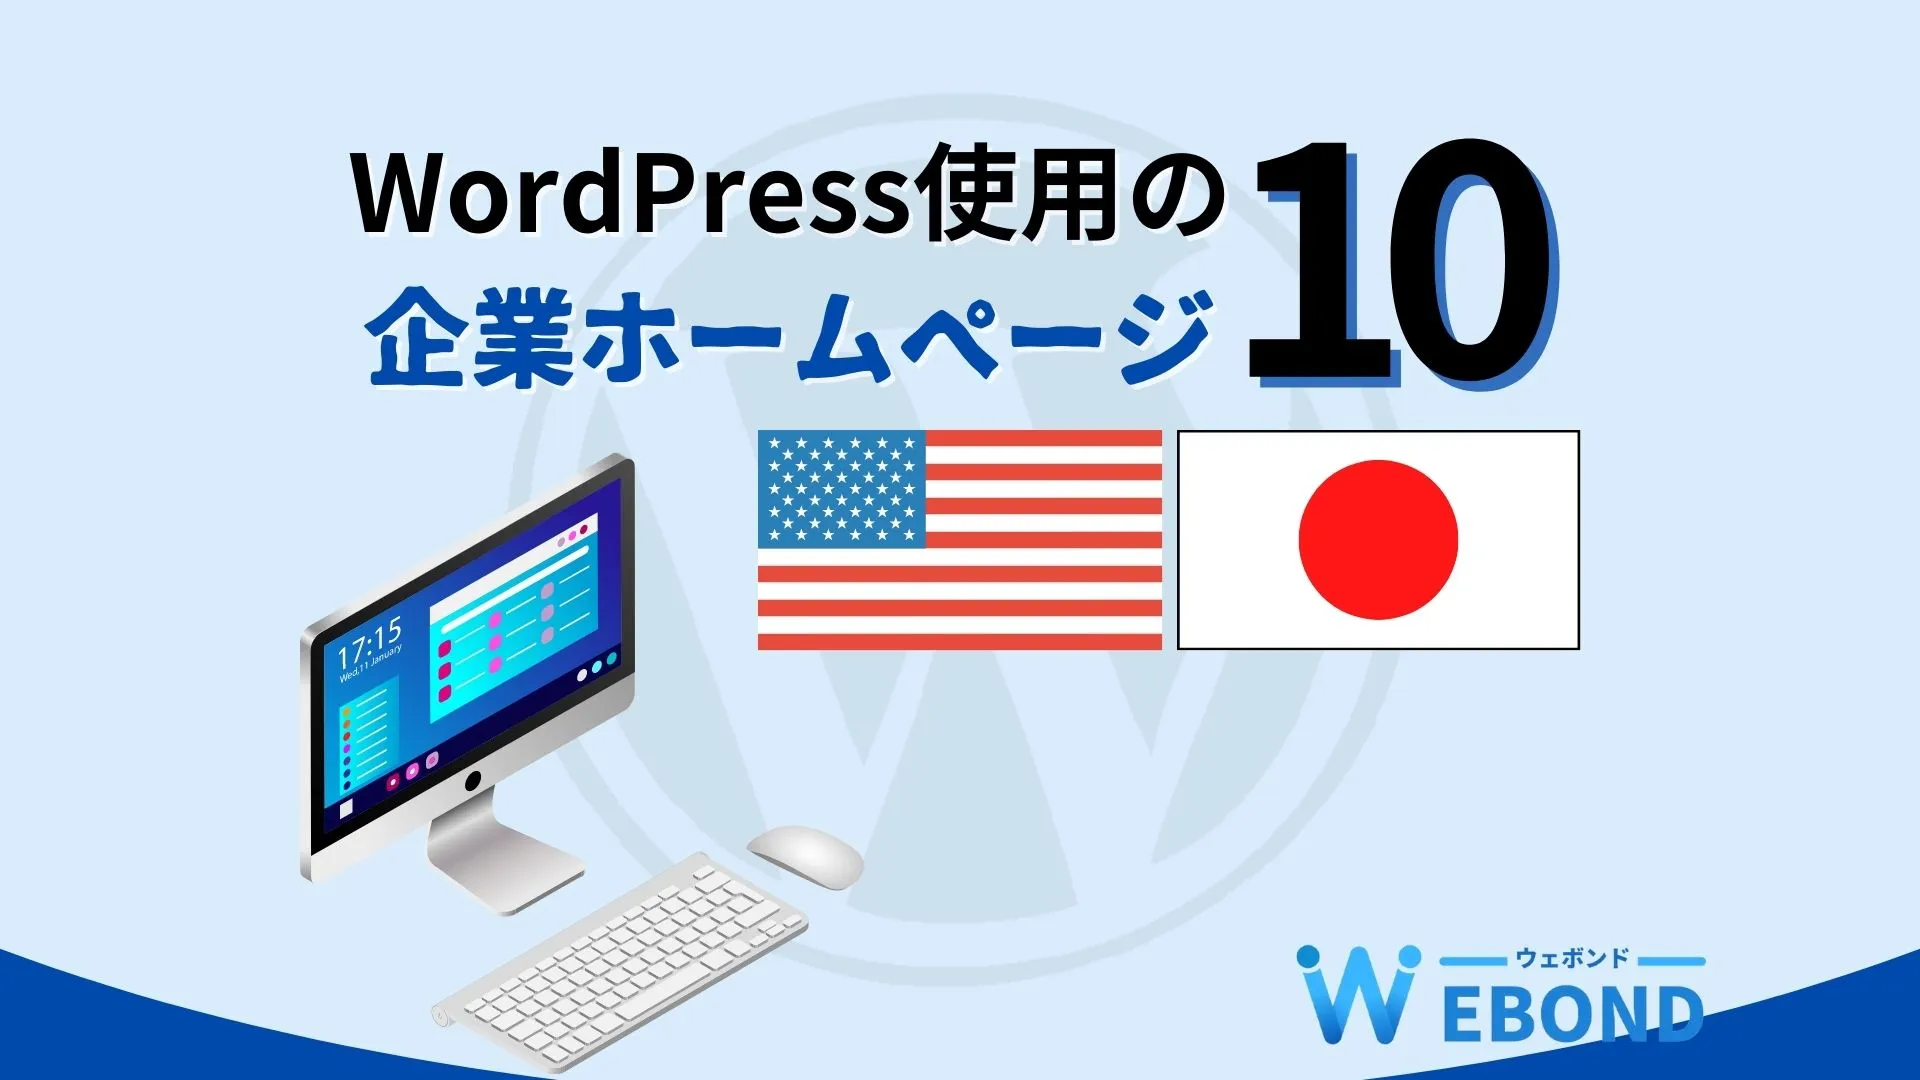 ホームページにWordPressを使用している企業10選【国内・海外】